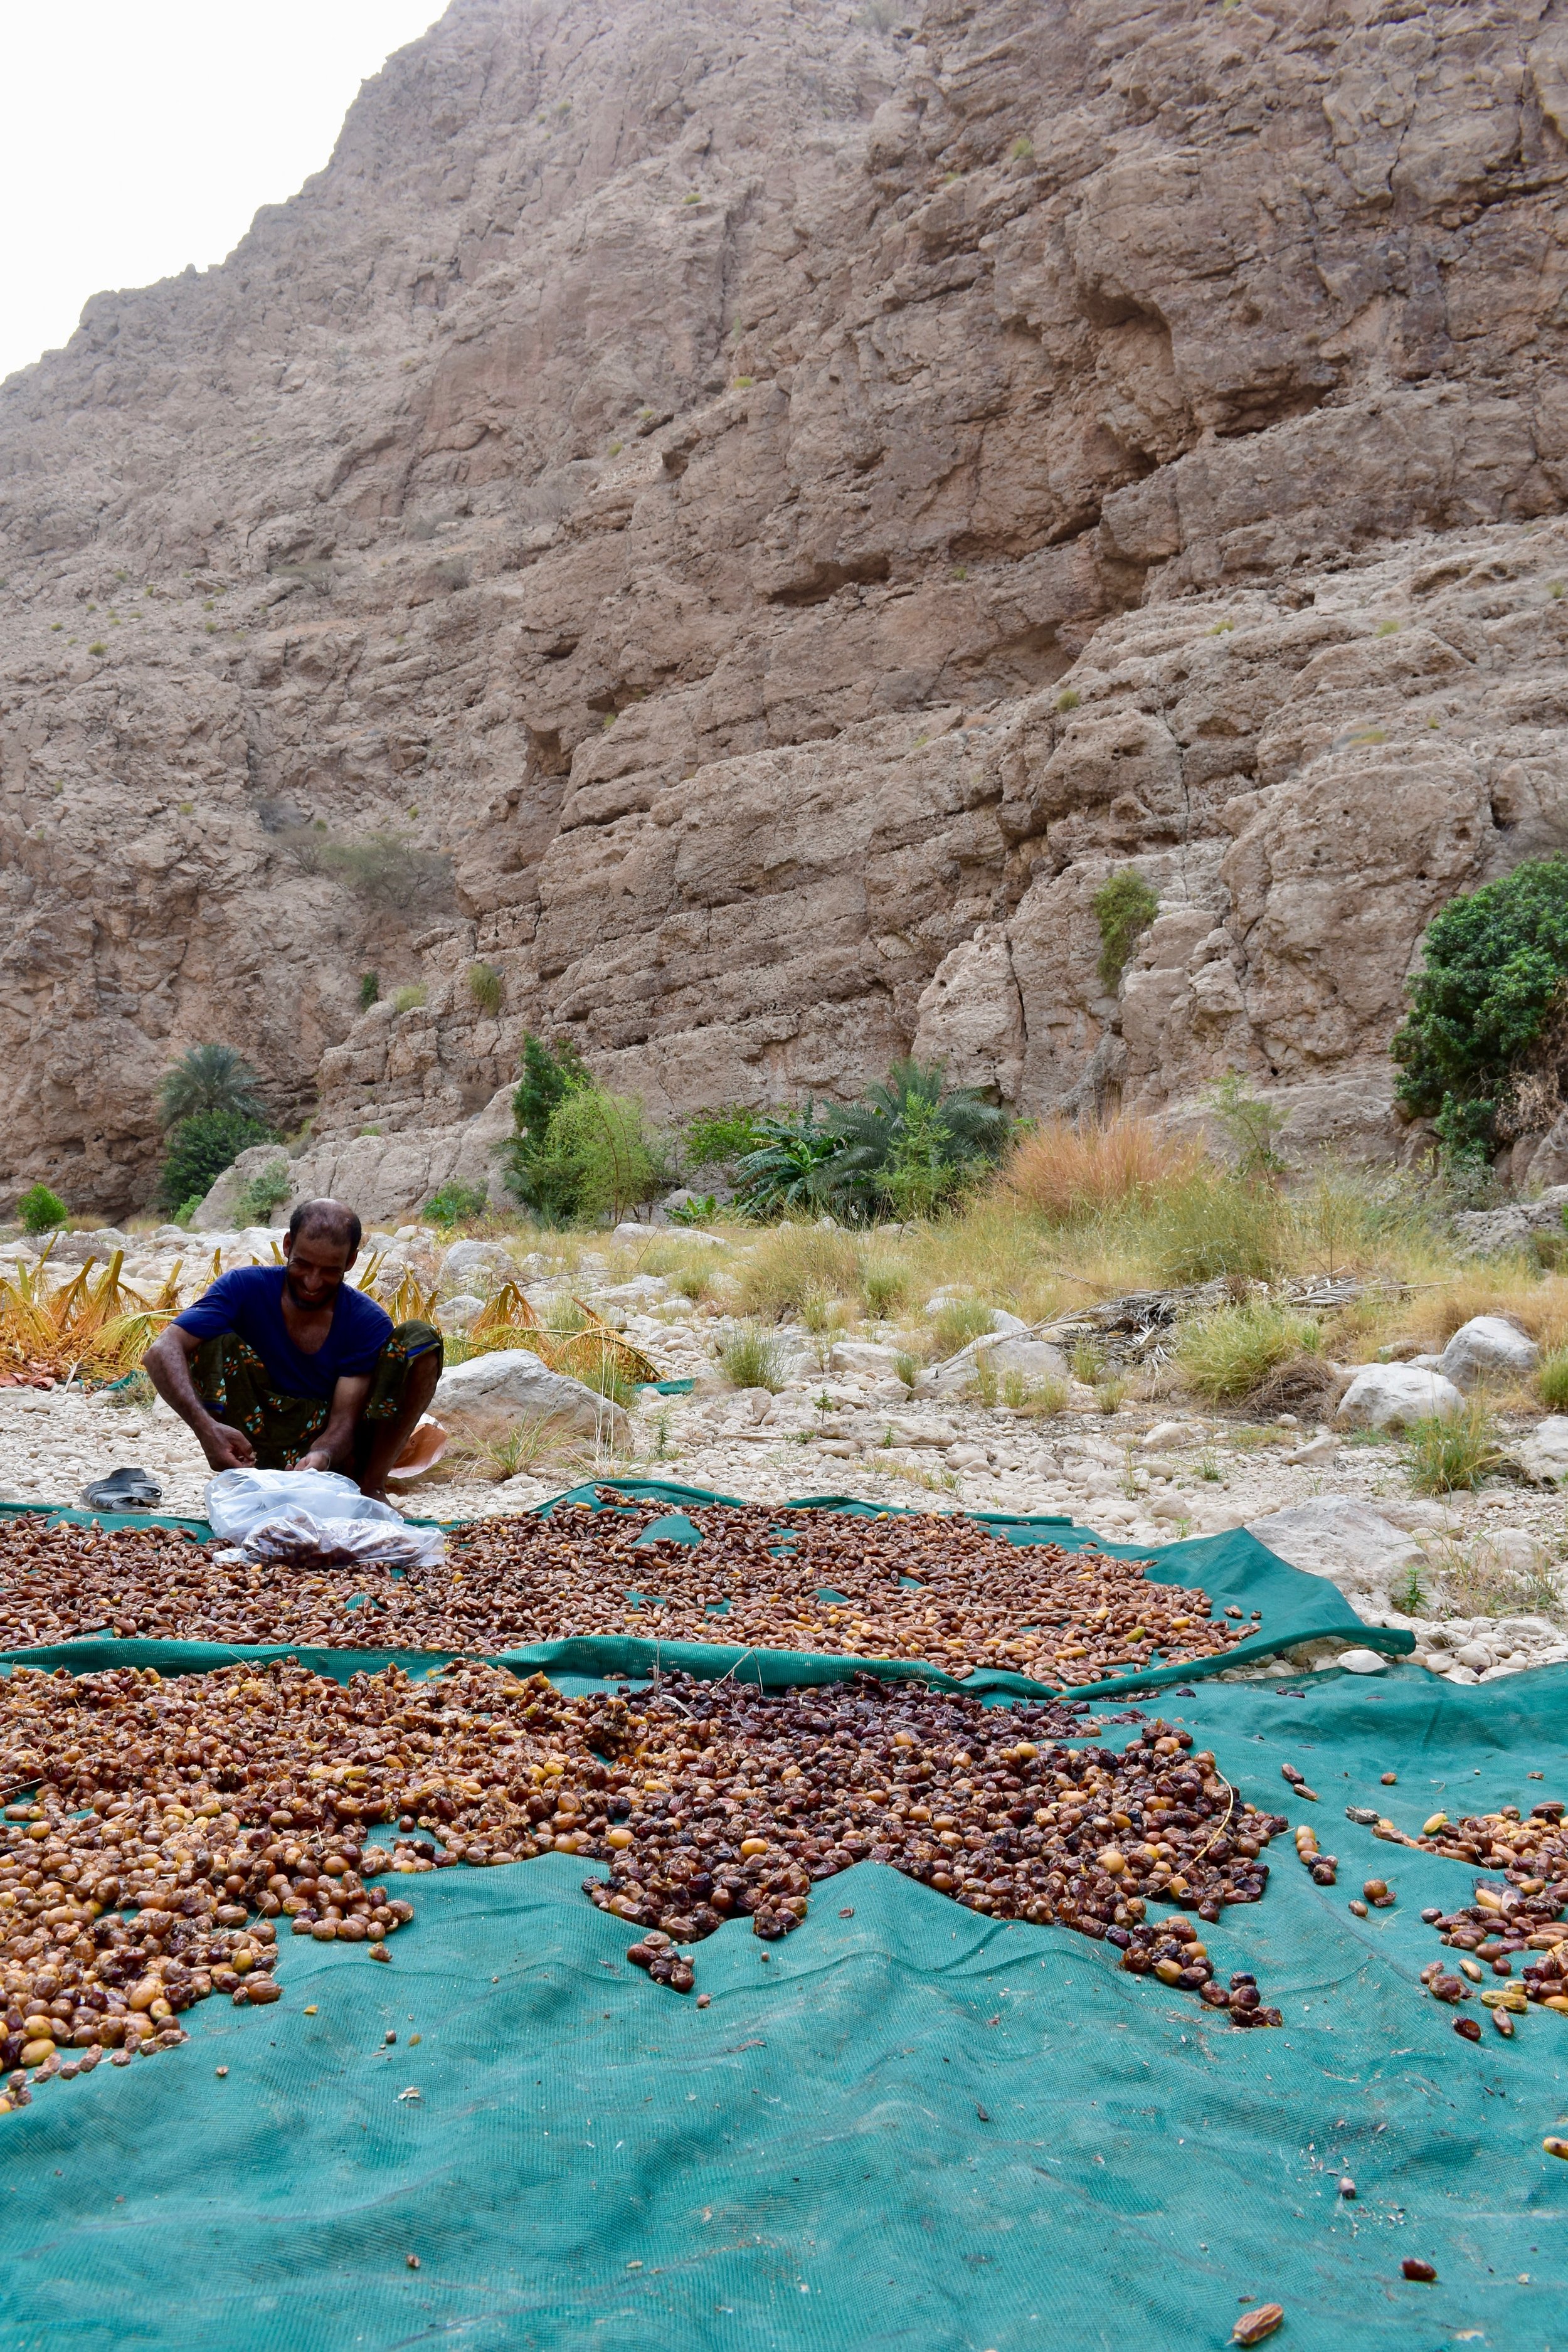  Farmer sorting dates in Wadi Shab  